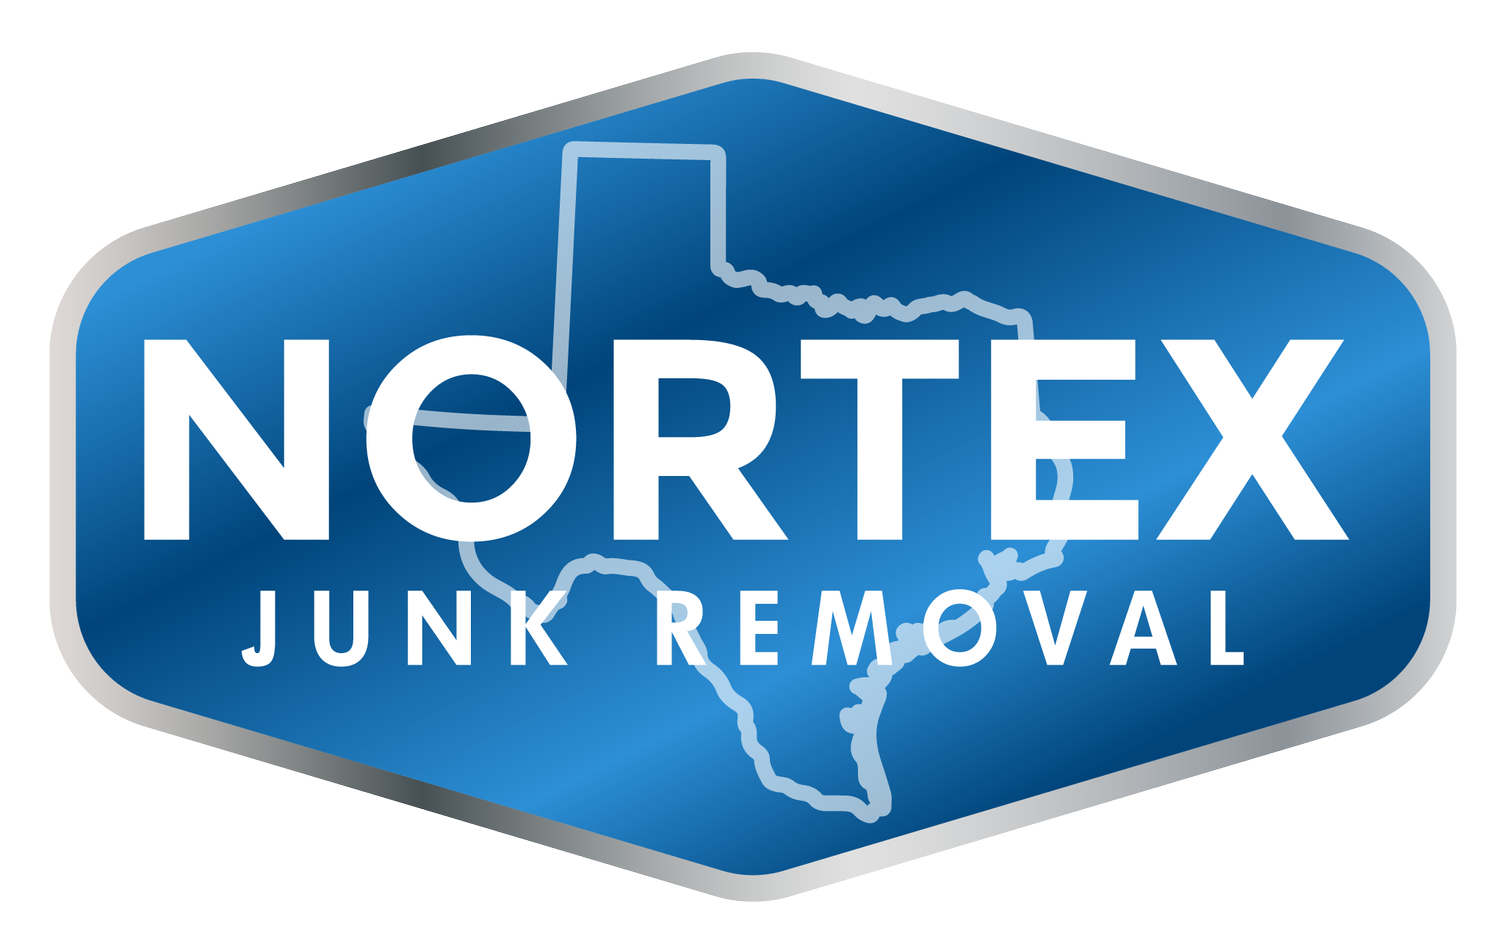 Nortex Junk Removal